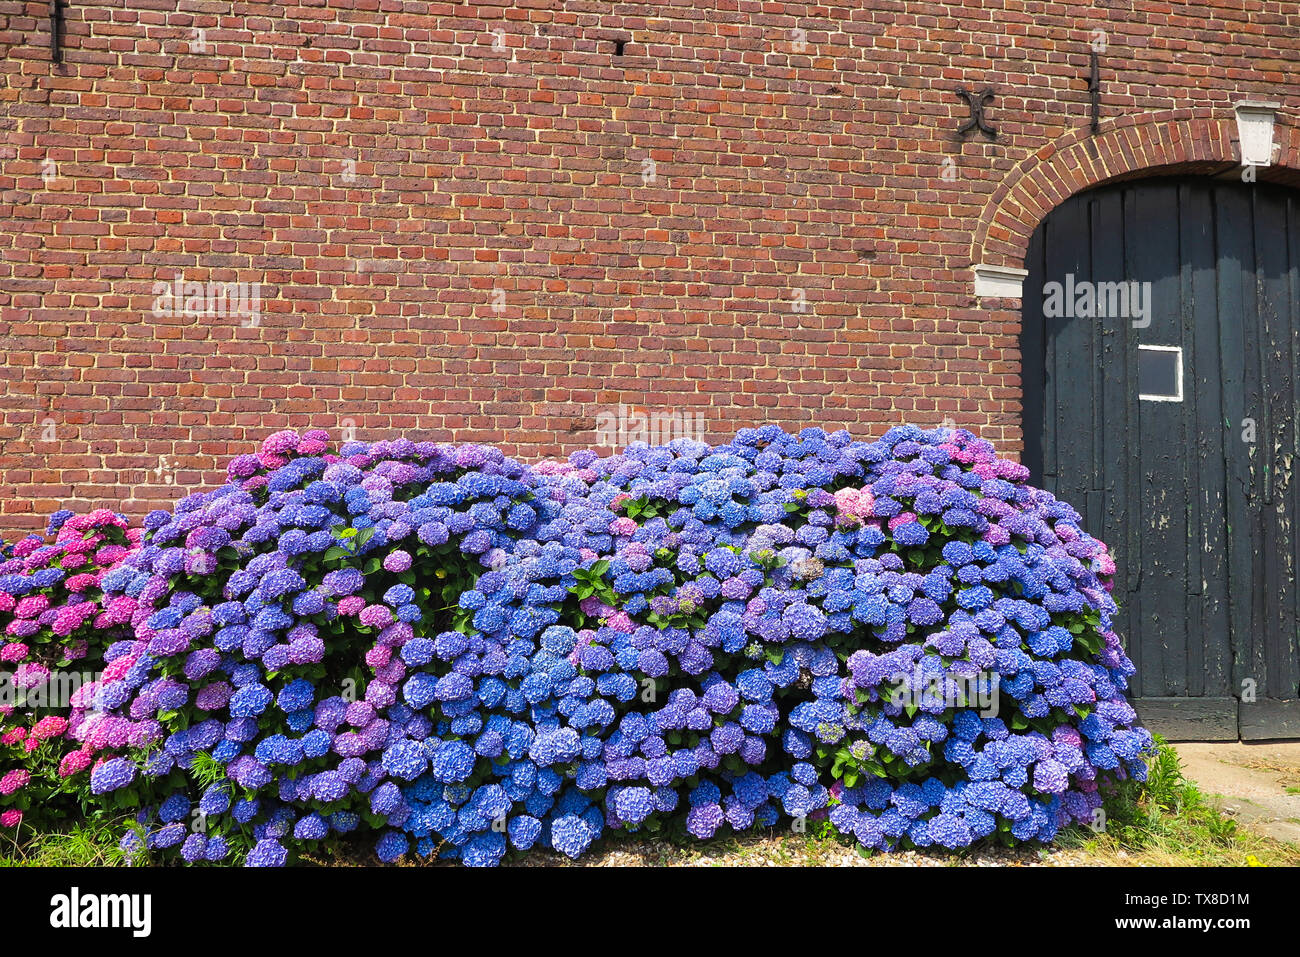 Blau und Violett blühende Hortensie Blumen gegen Red brick wall des alten  holländischen Bauernhof - Niederlande, Venlo Stockfotografie - Alamy